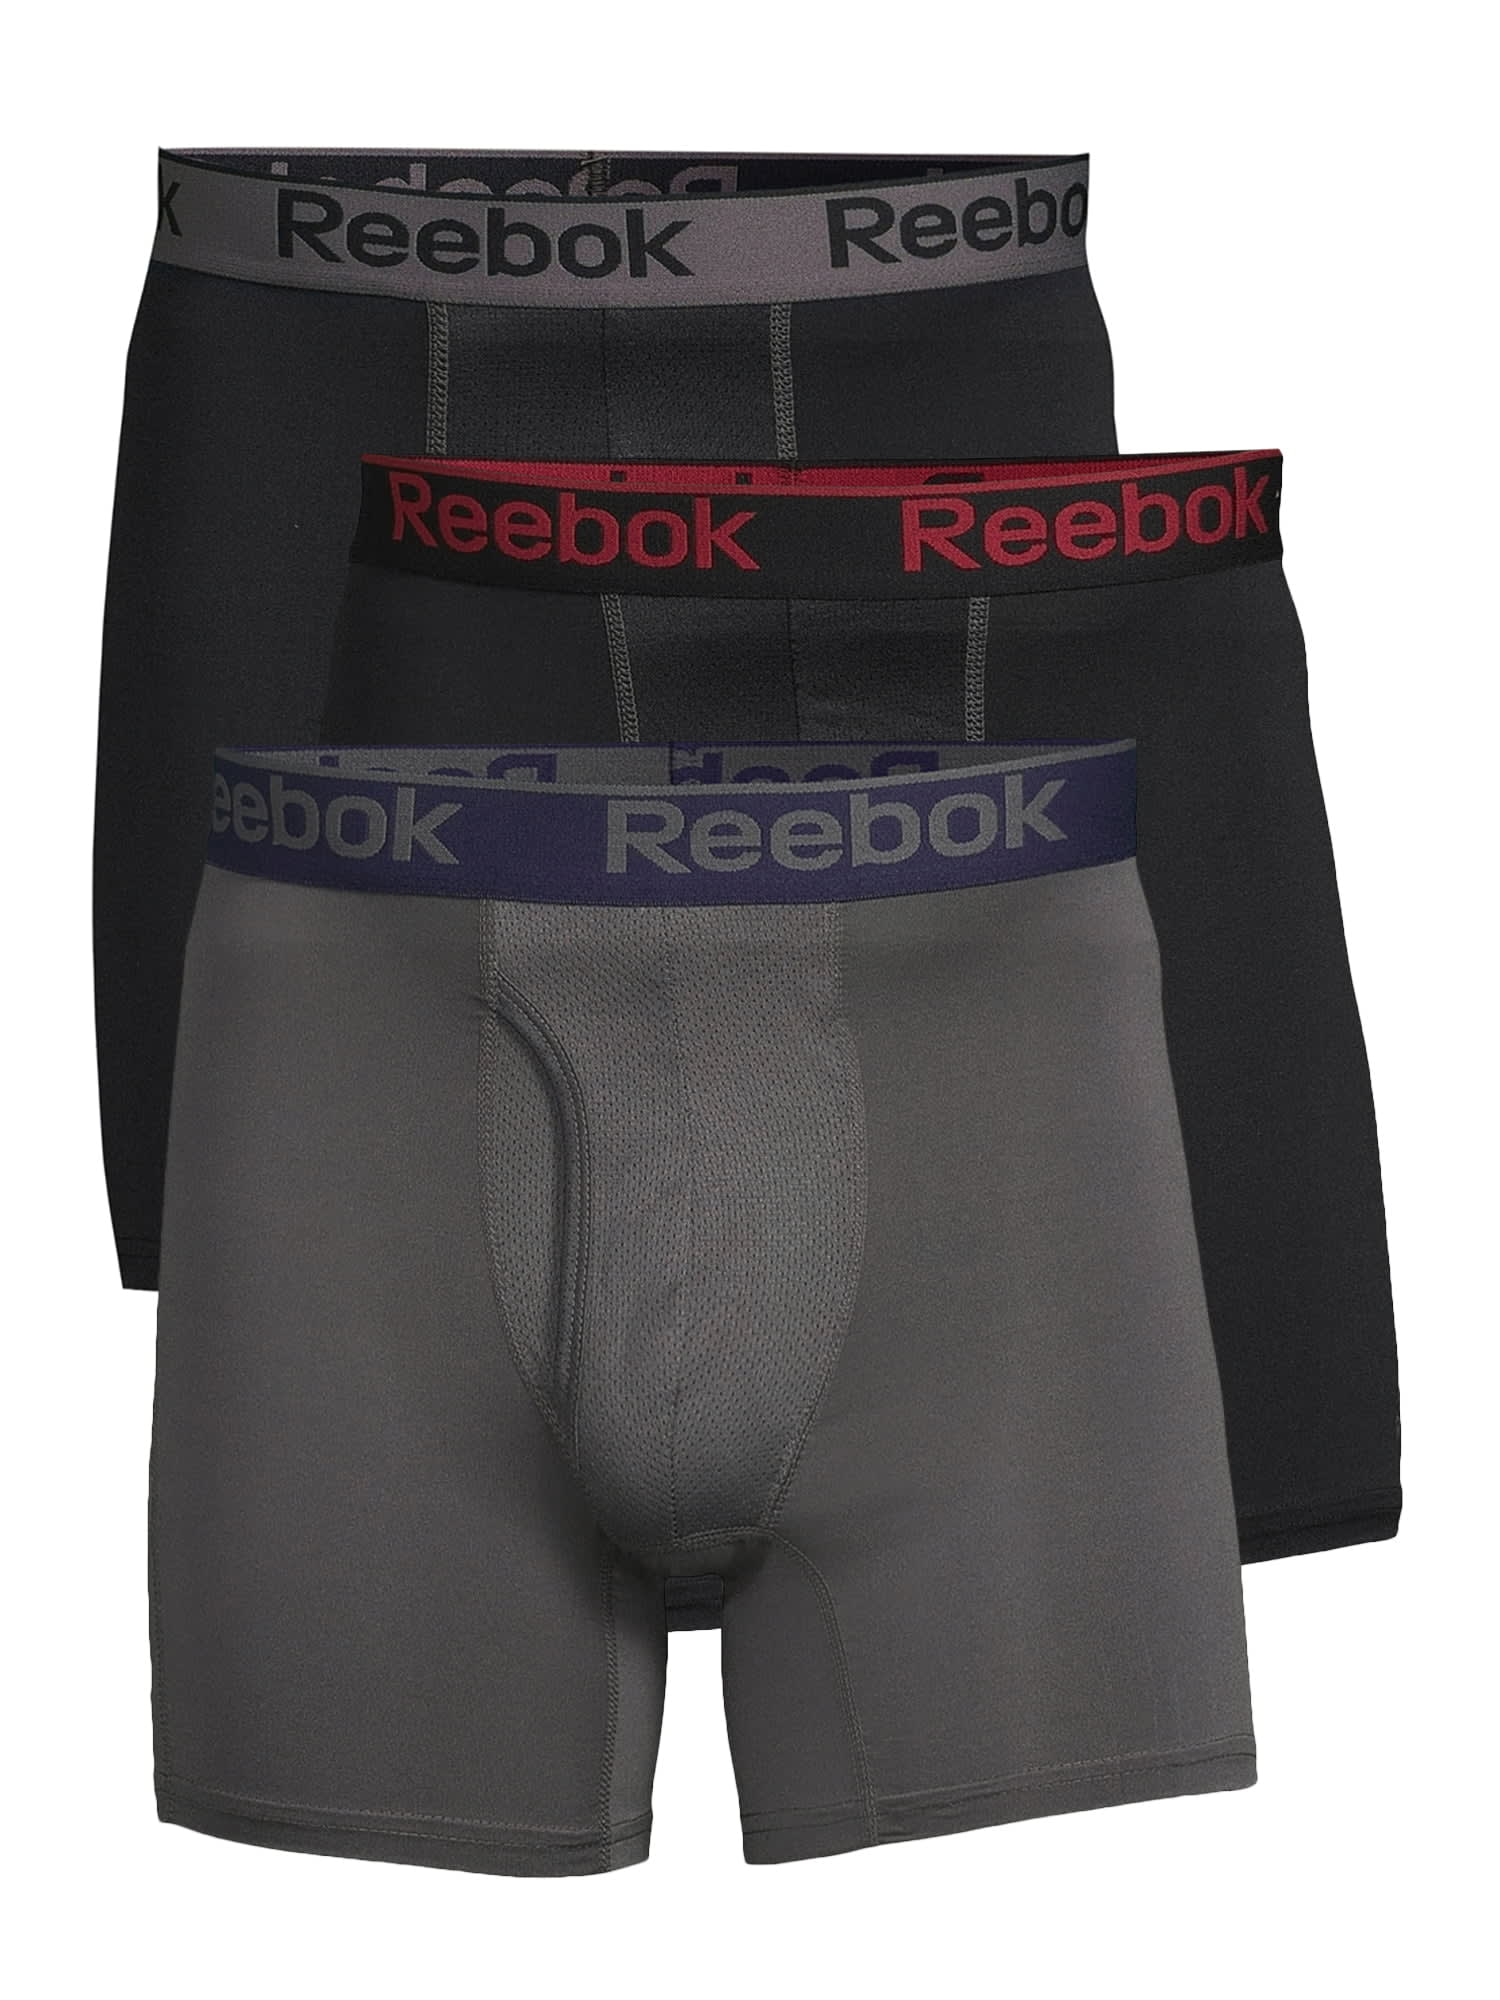 Reebok Men's Underwear boxer brief